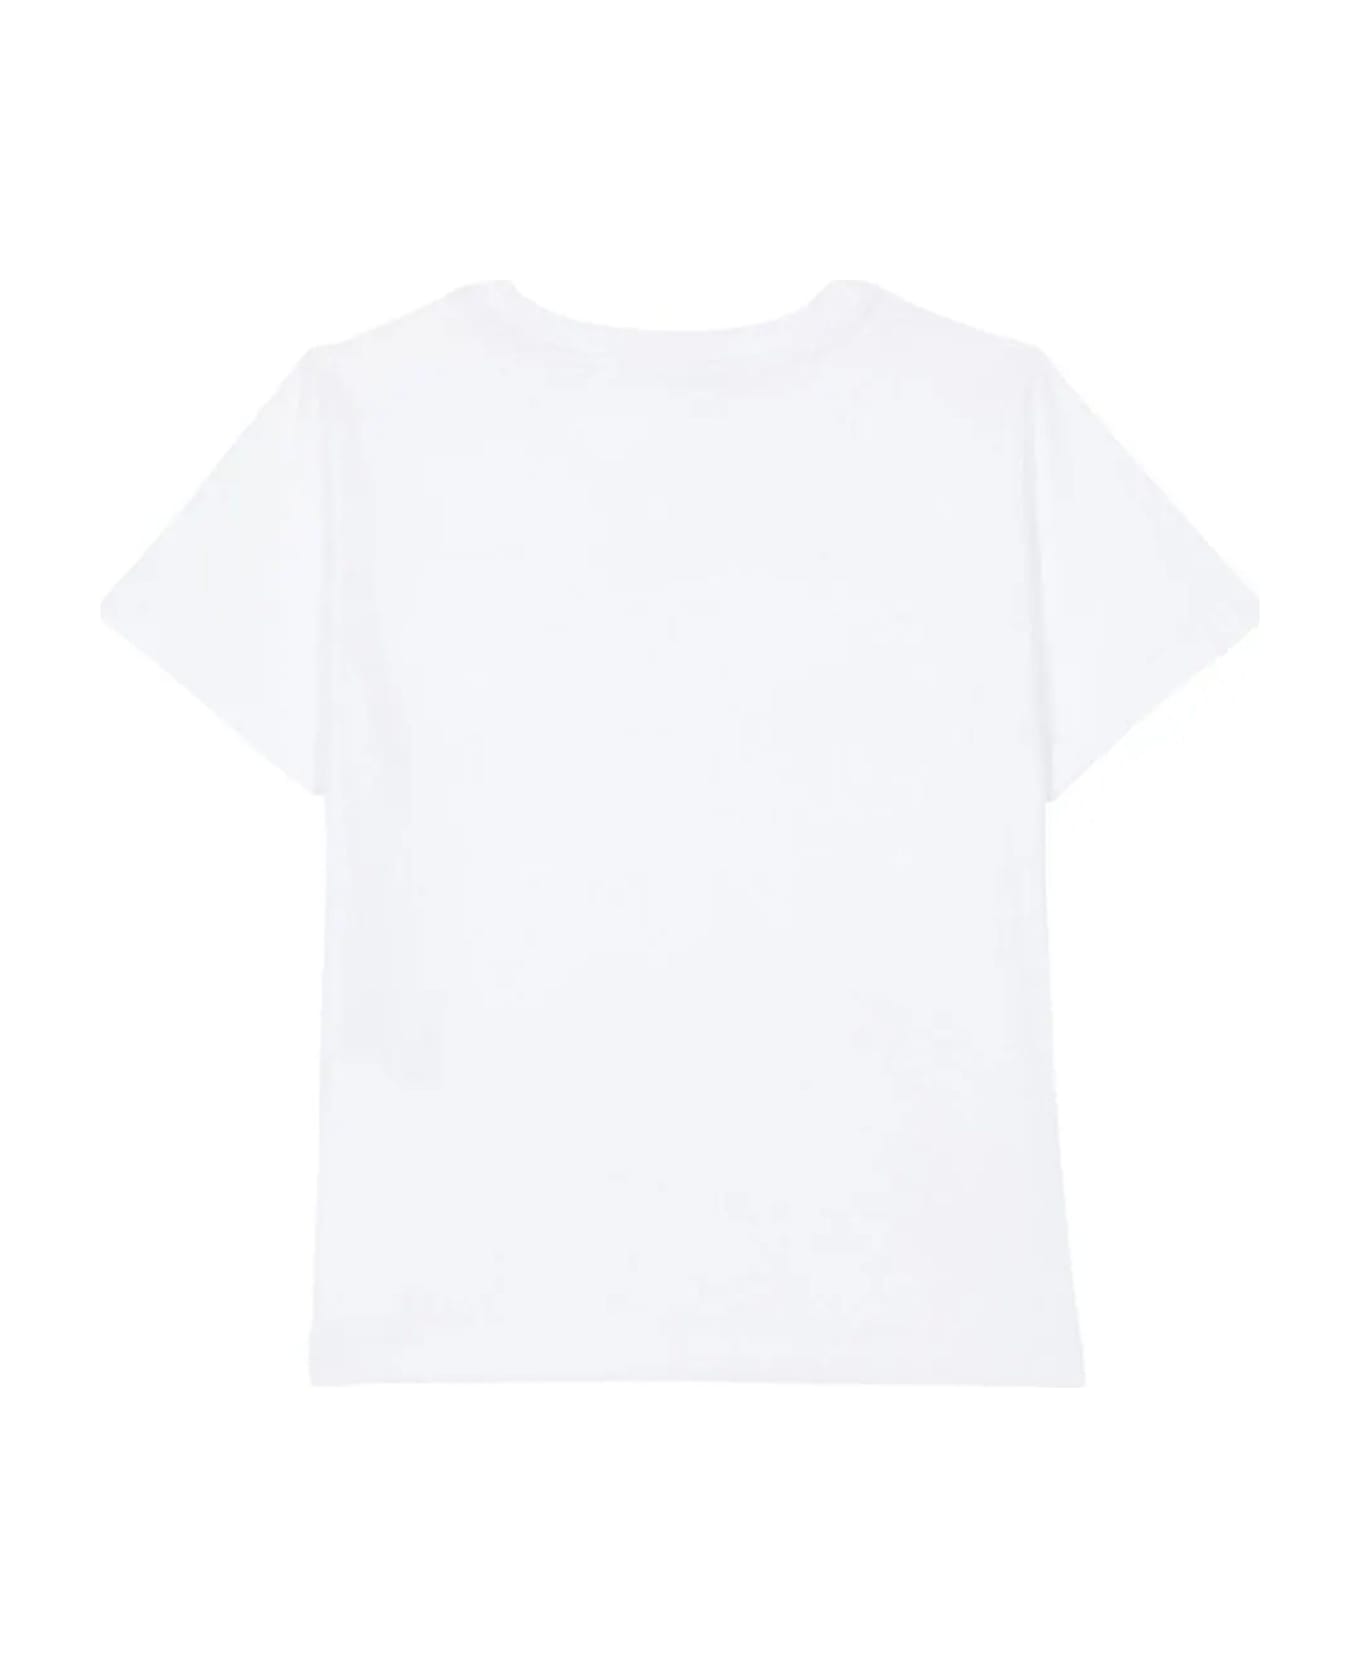 Balmain T-shirts And Polos White - White